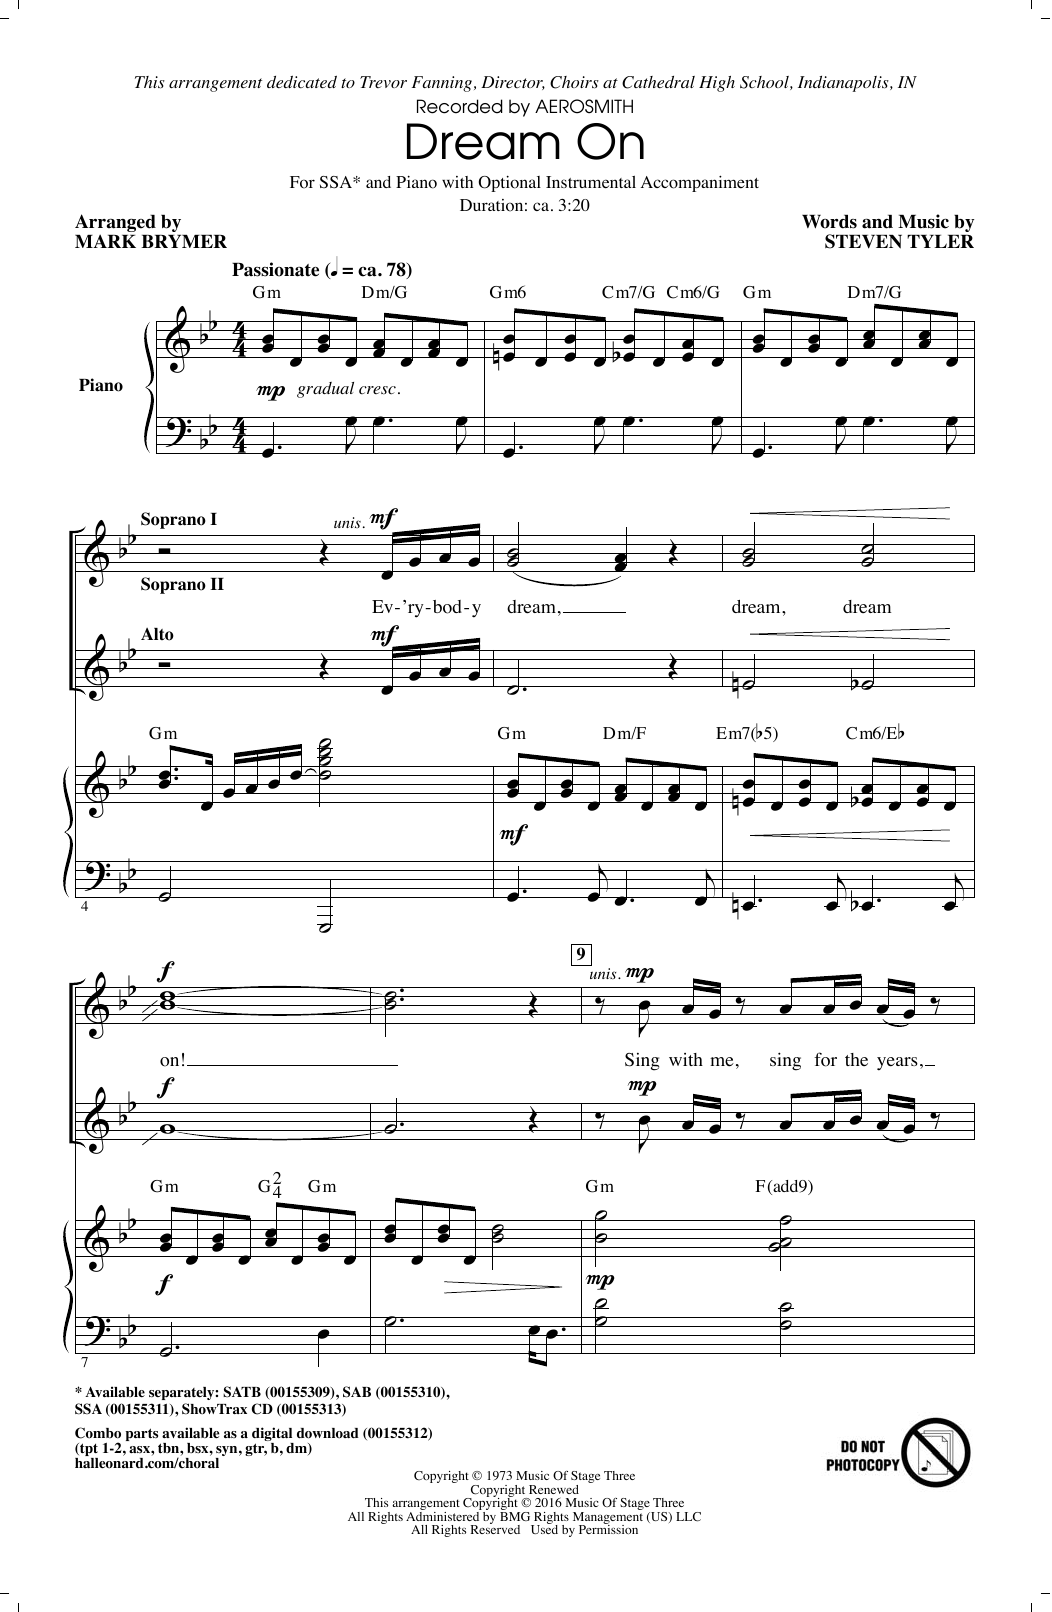 Aerosmith Dream On (arr. Mark Brymer) sheet music notes and chords arranged for SAB Choir